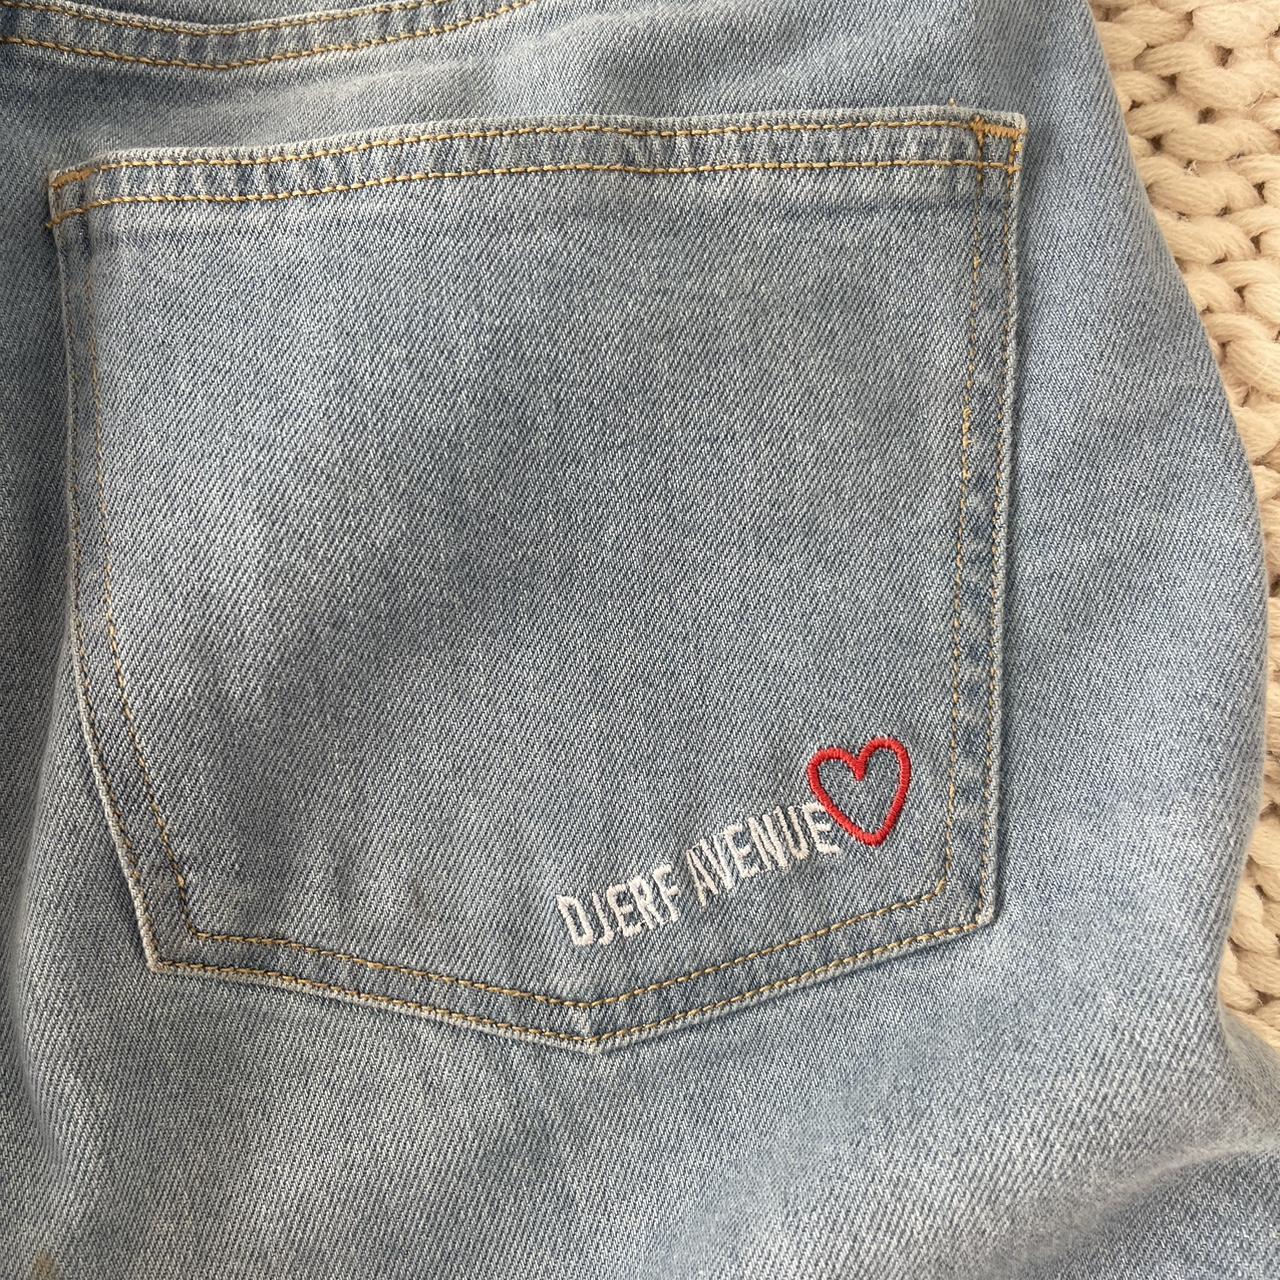 Djerf Avenue Women's Jeans